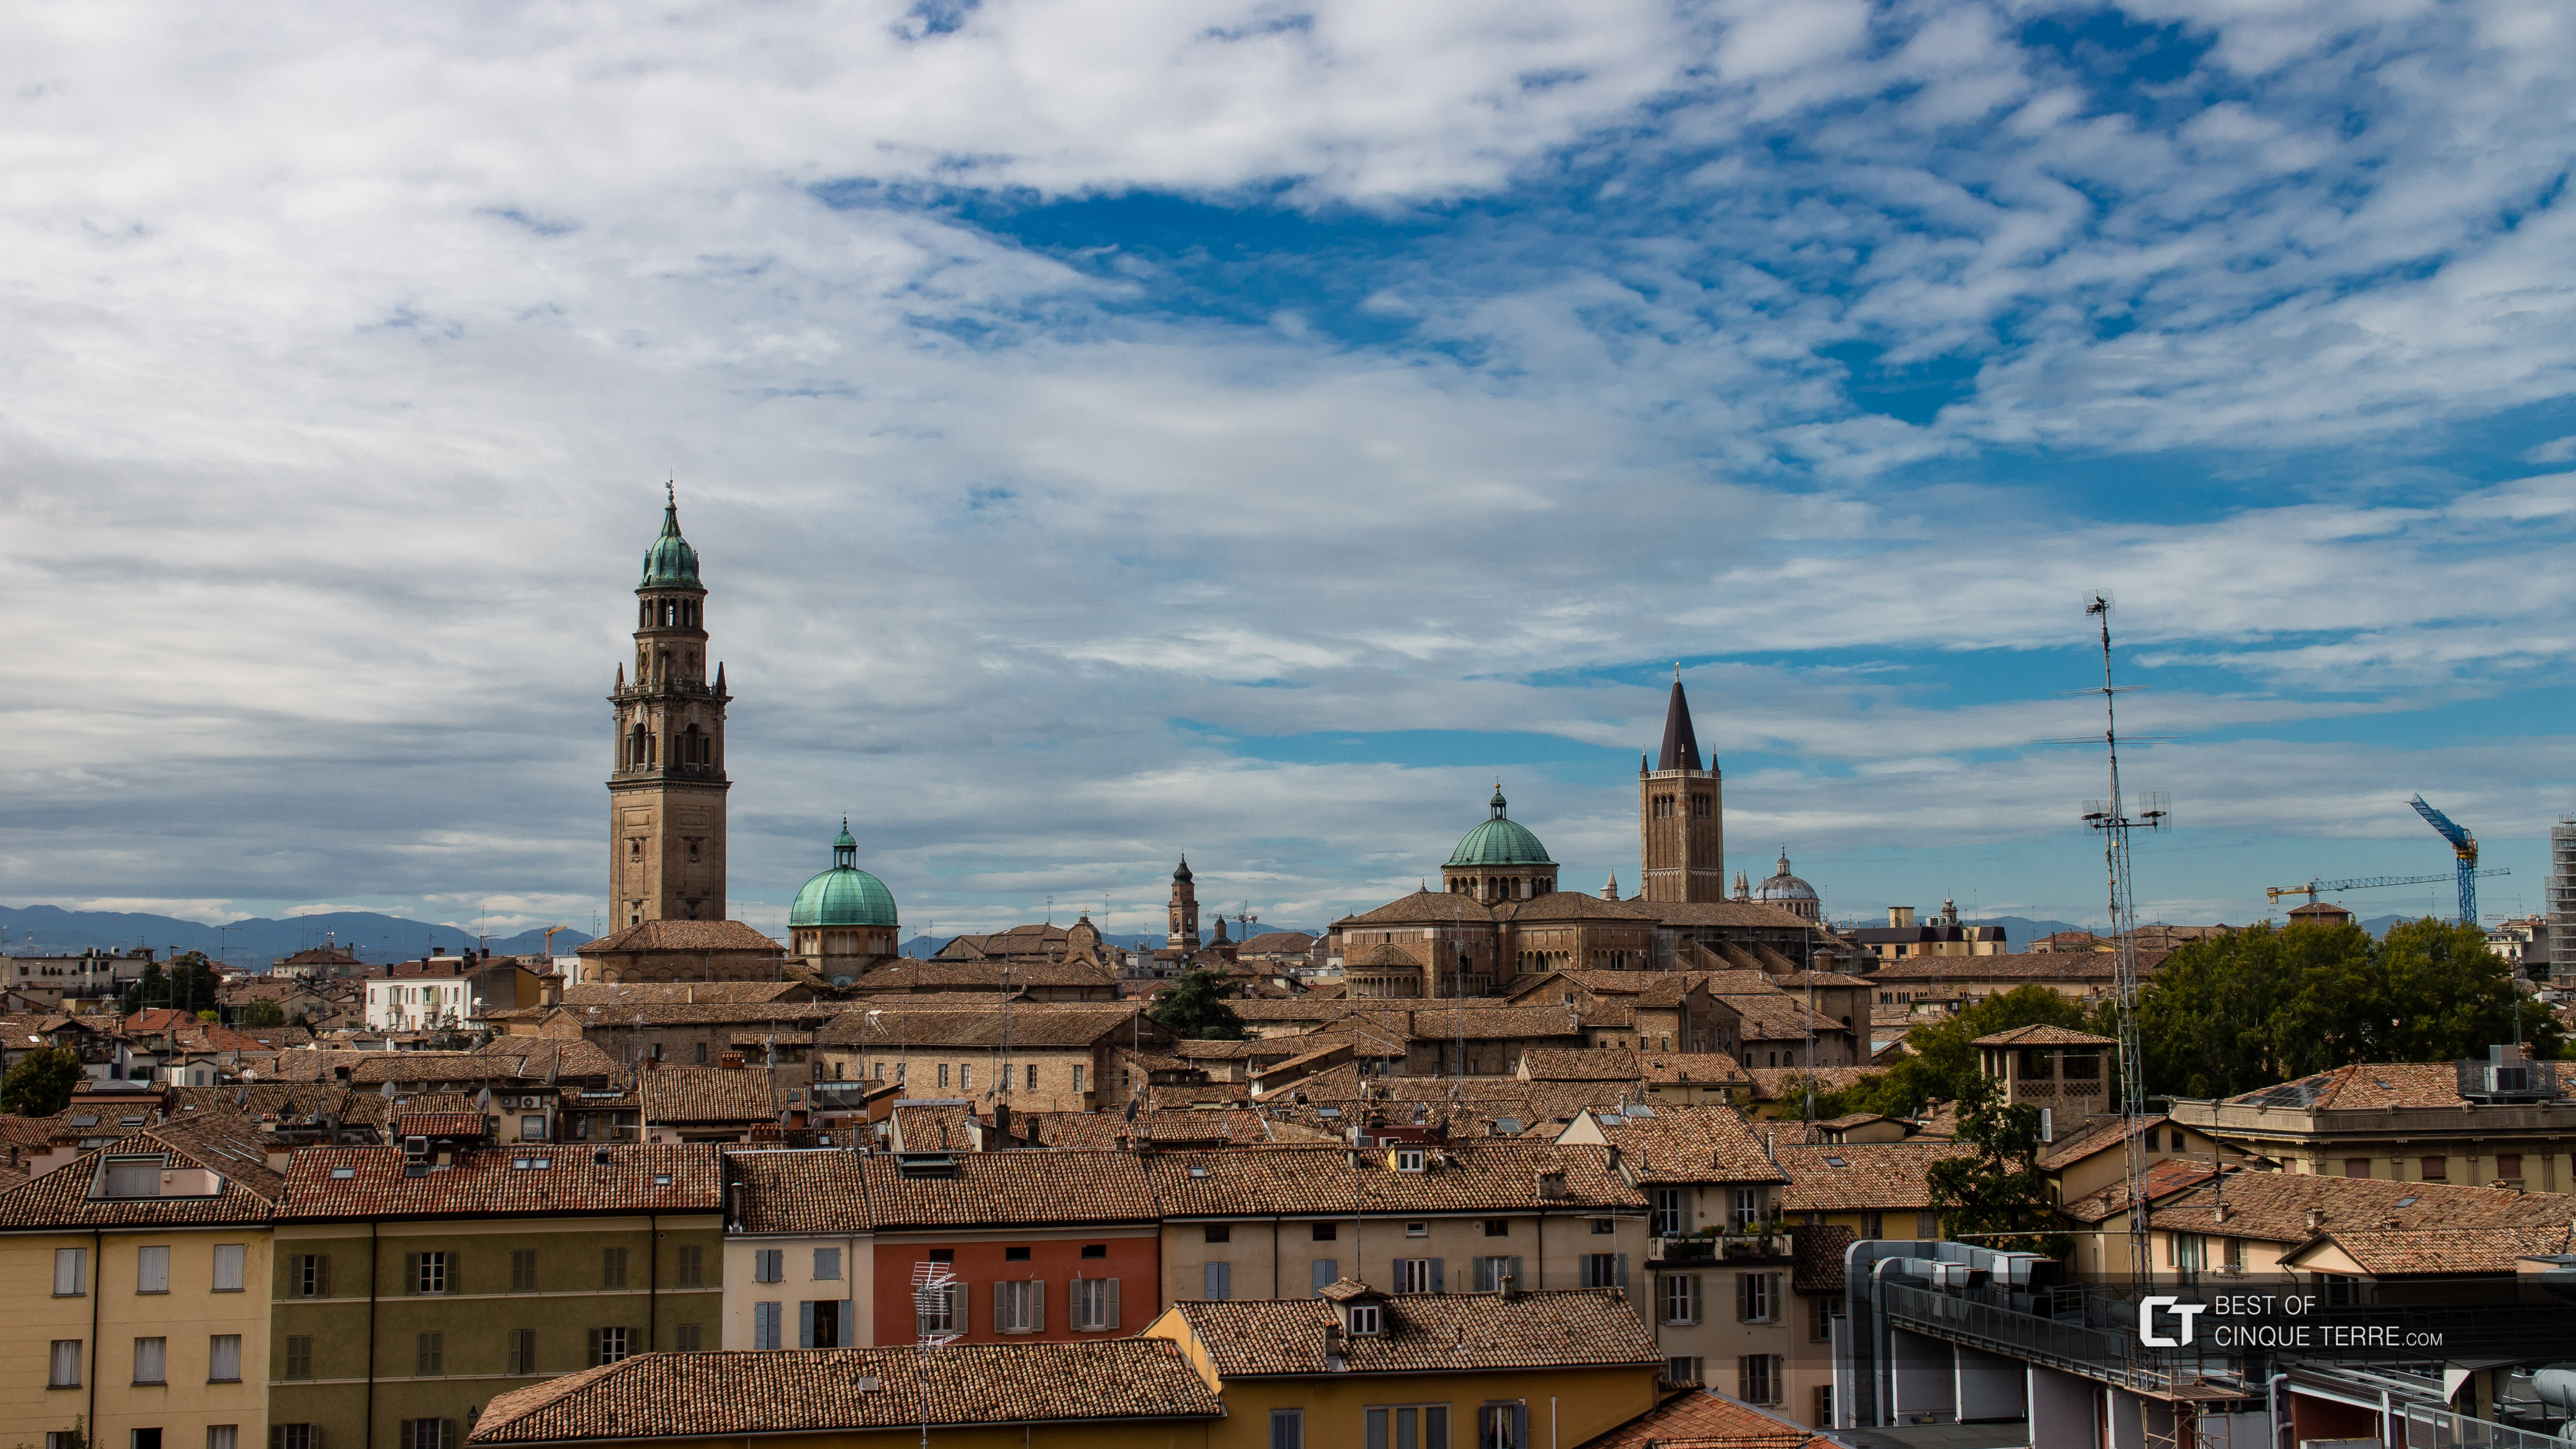 Os tetos do centro histórico, Parma, Itália